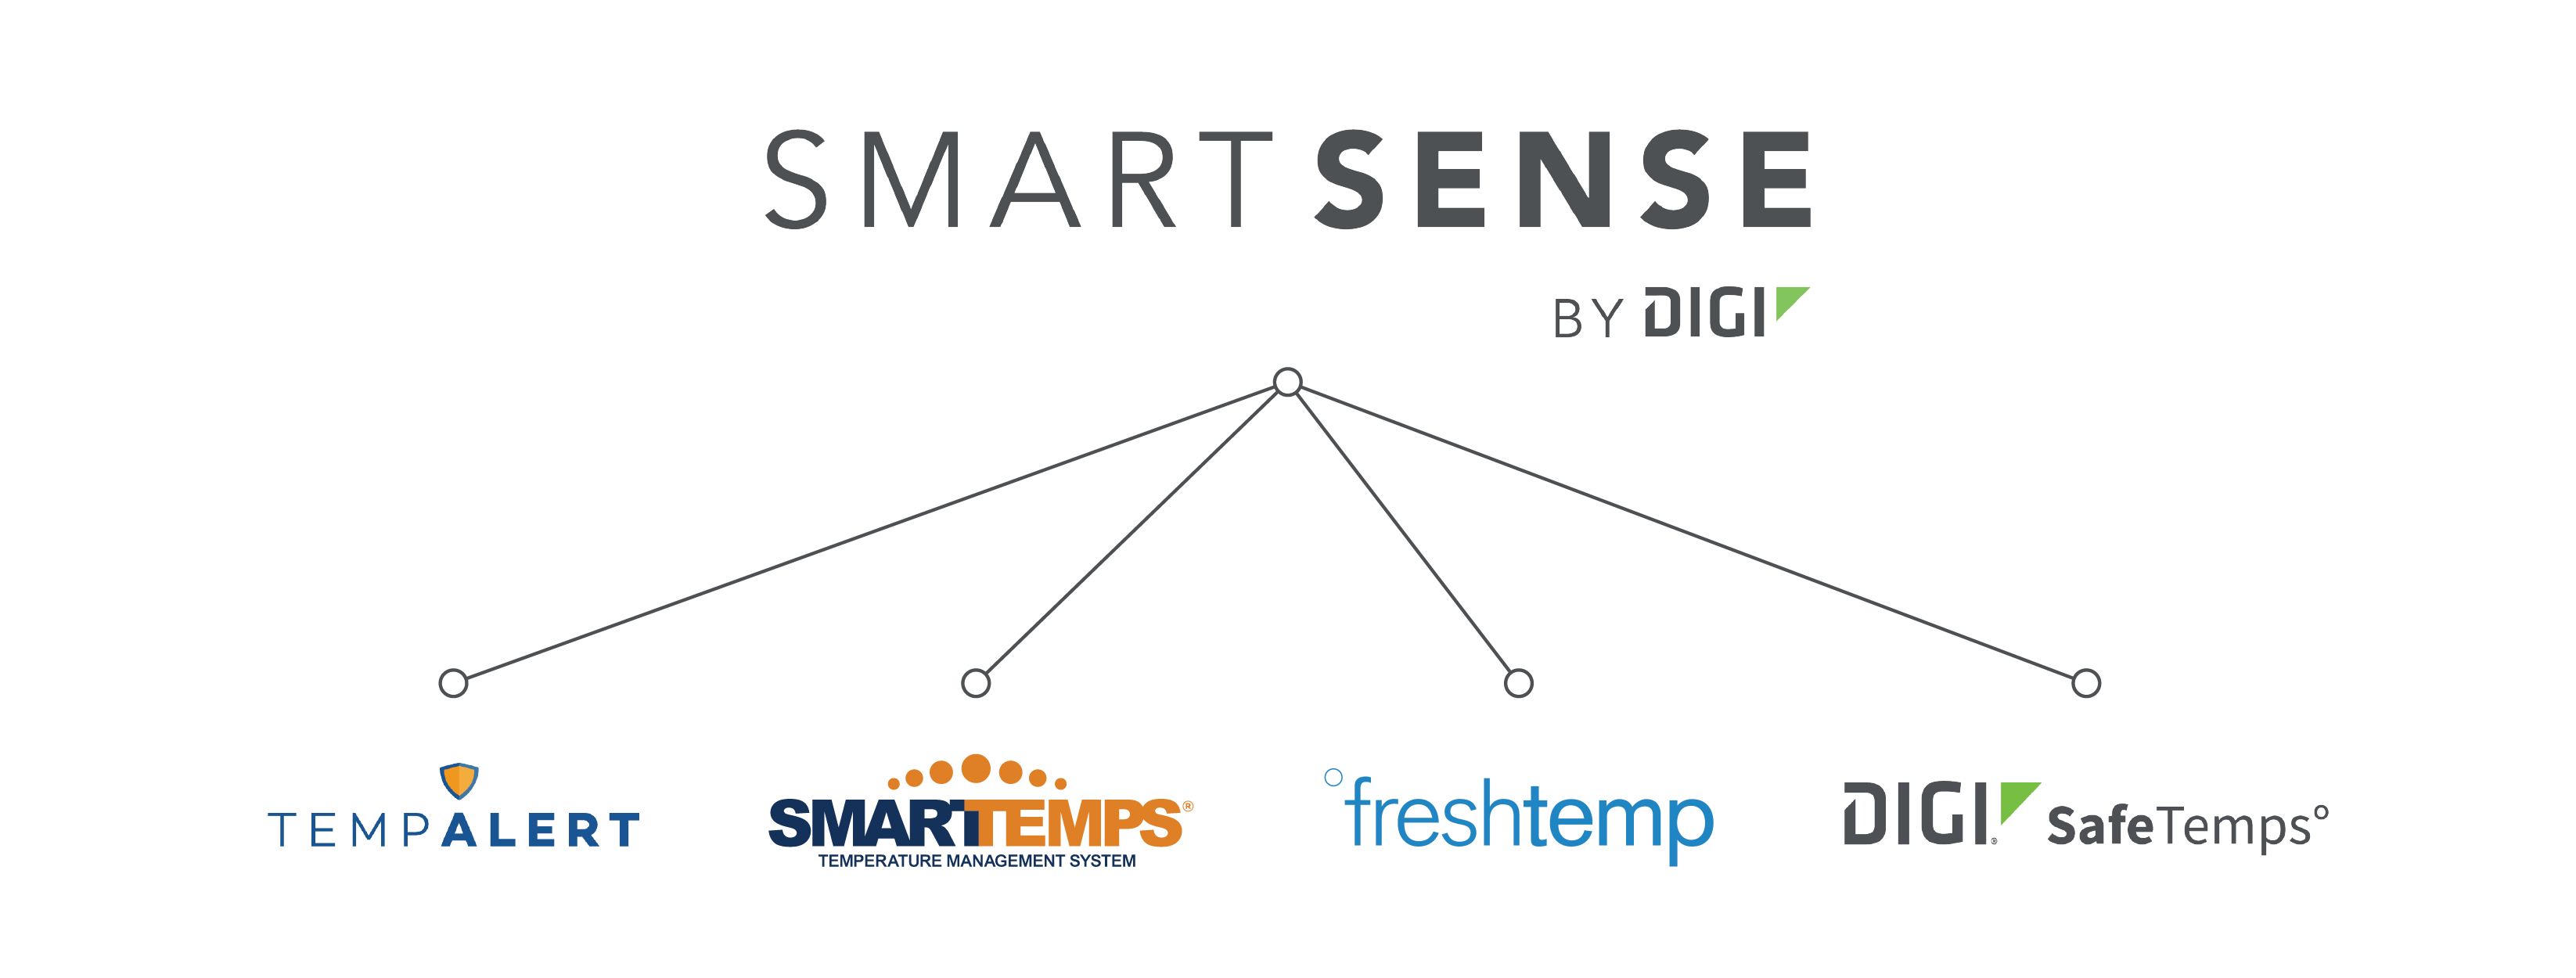 SmartSense by Digi